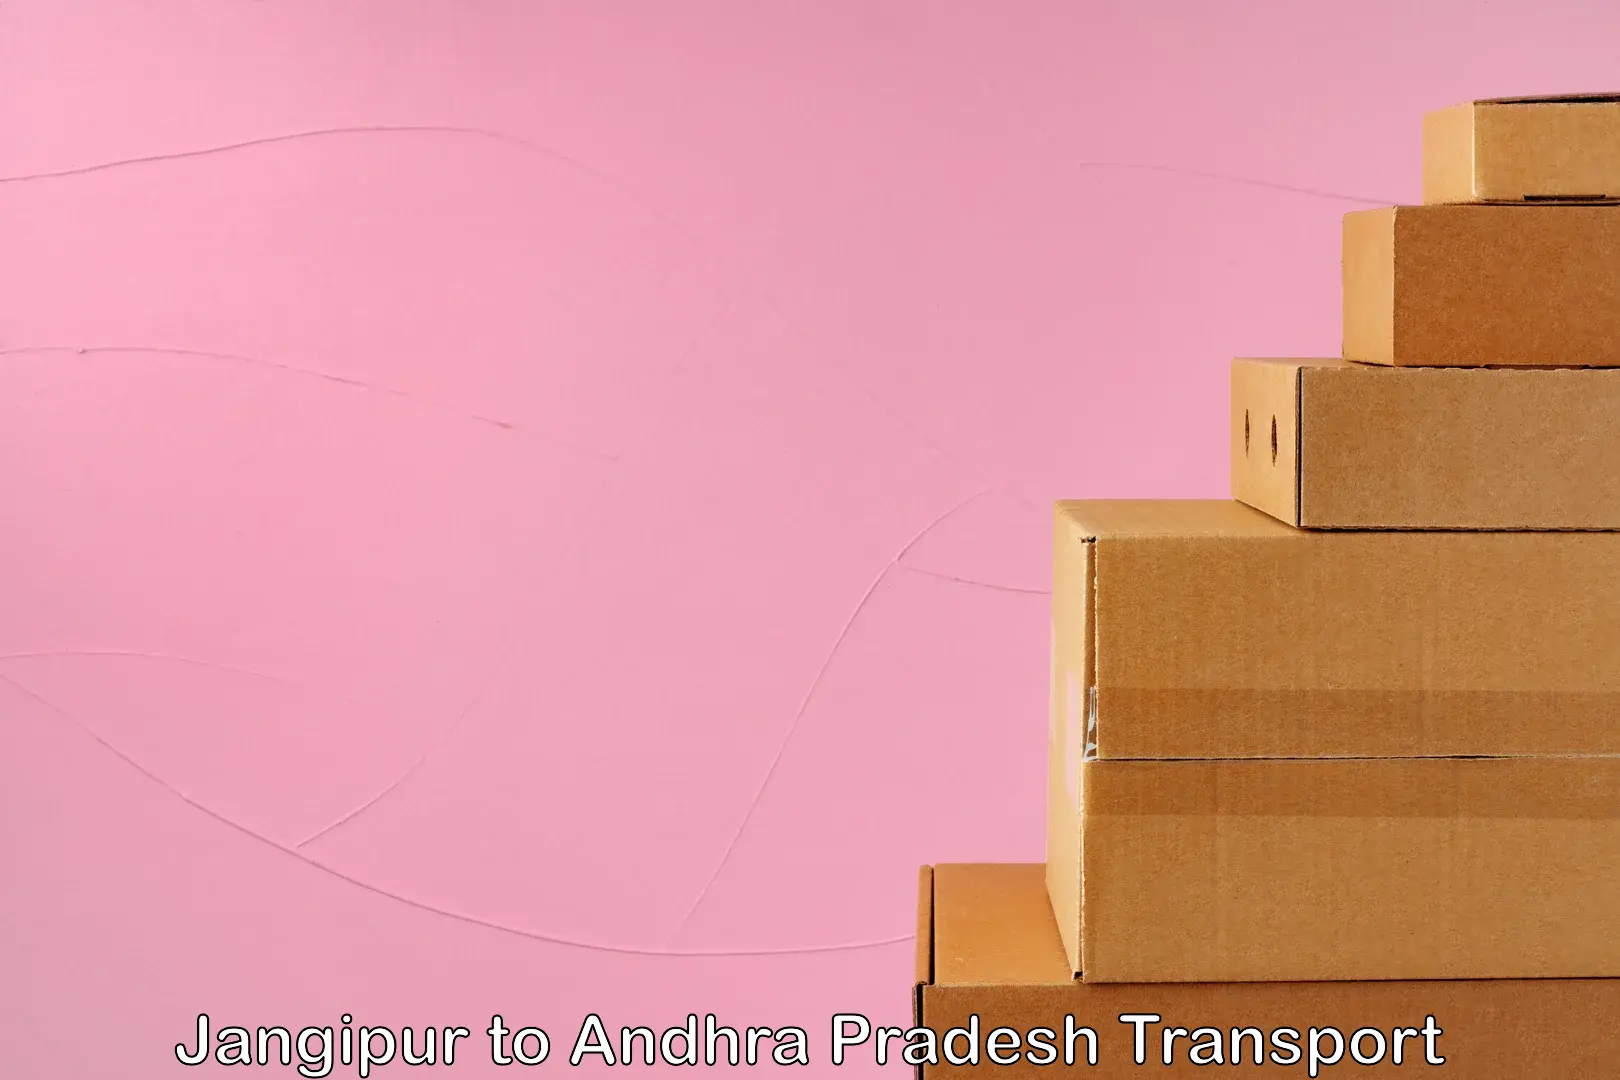 Furniture transport service Jangipur to Andhra Pradesh